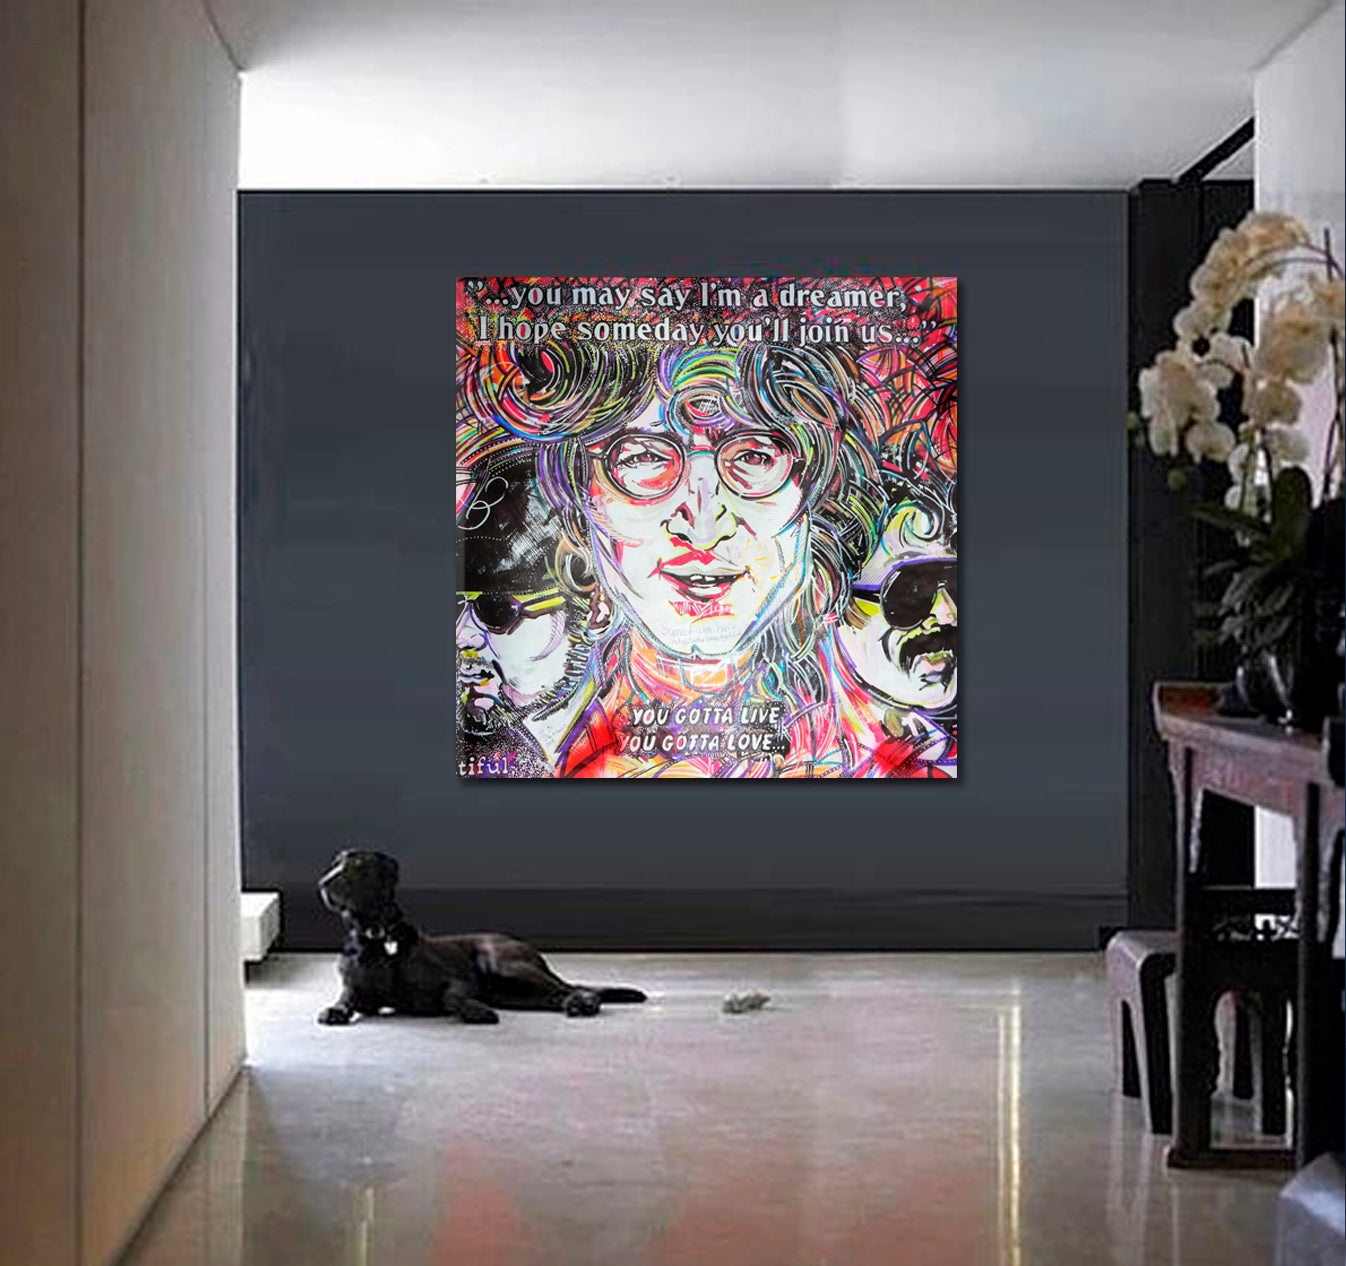 John Lennon Inspired Lyrics from Beatles Songs Street Art - S Street Art Canvas Print Artesty   